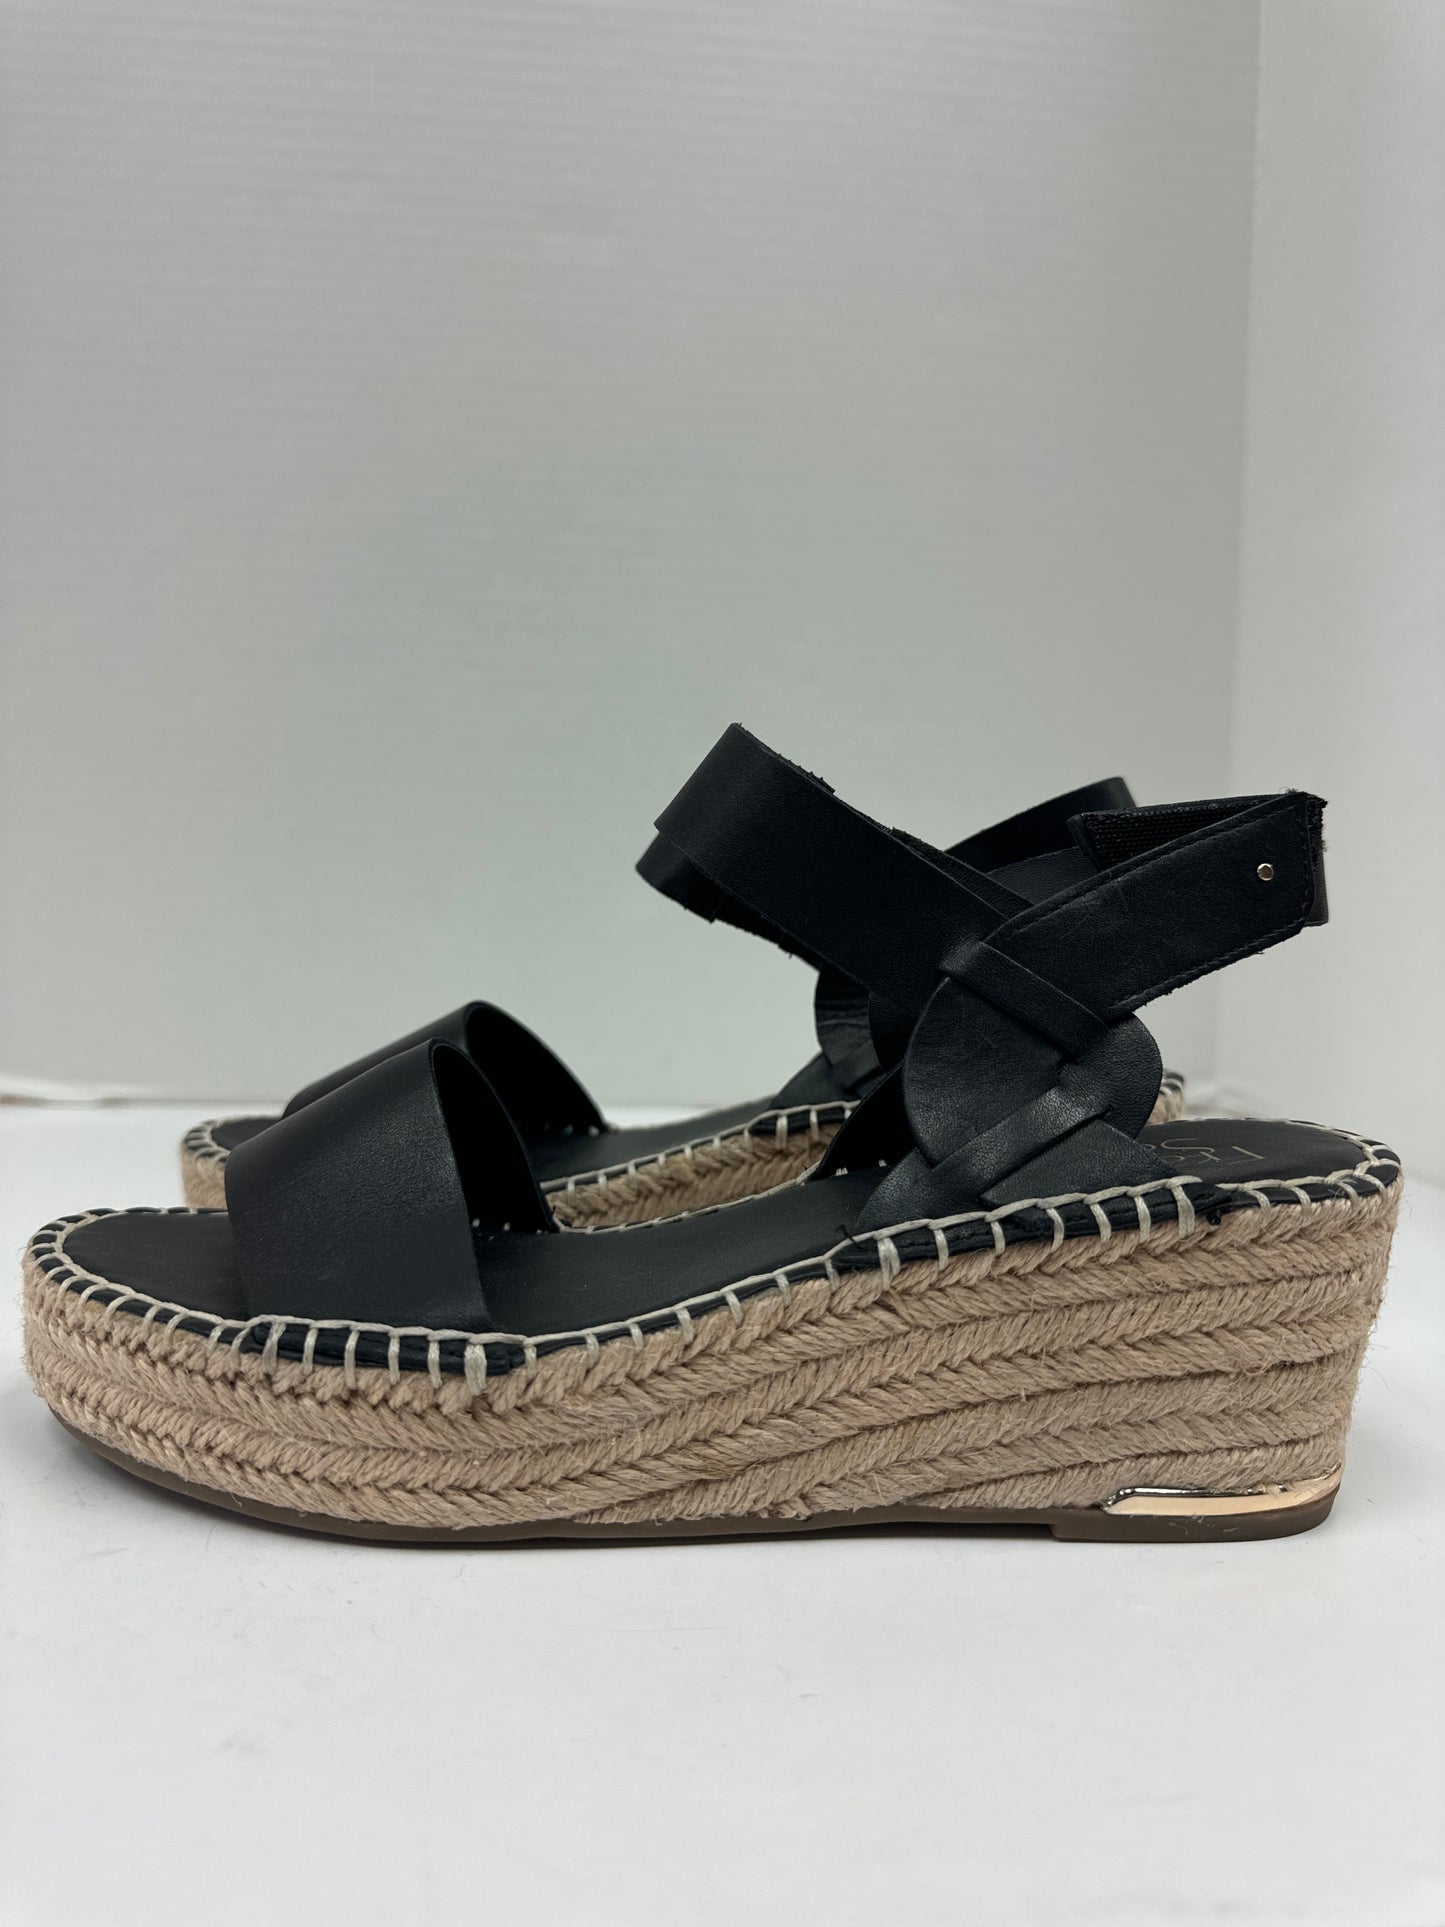 Black Sandals Flats Franco Sarto, Size 6.5